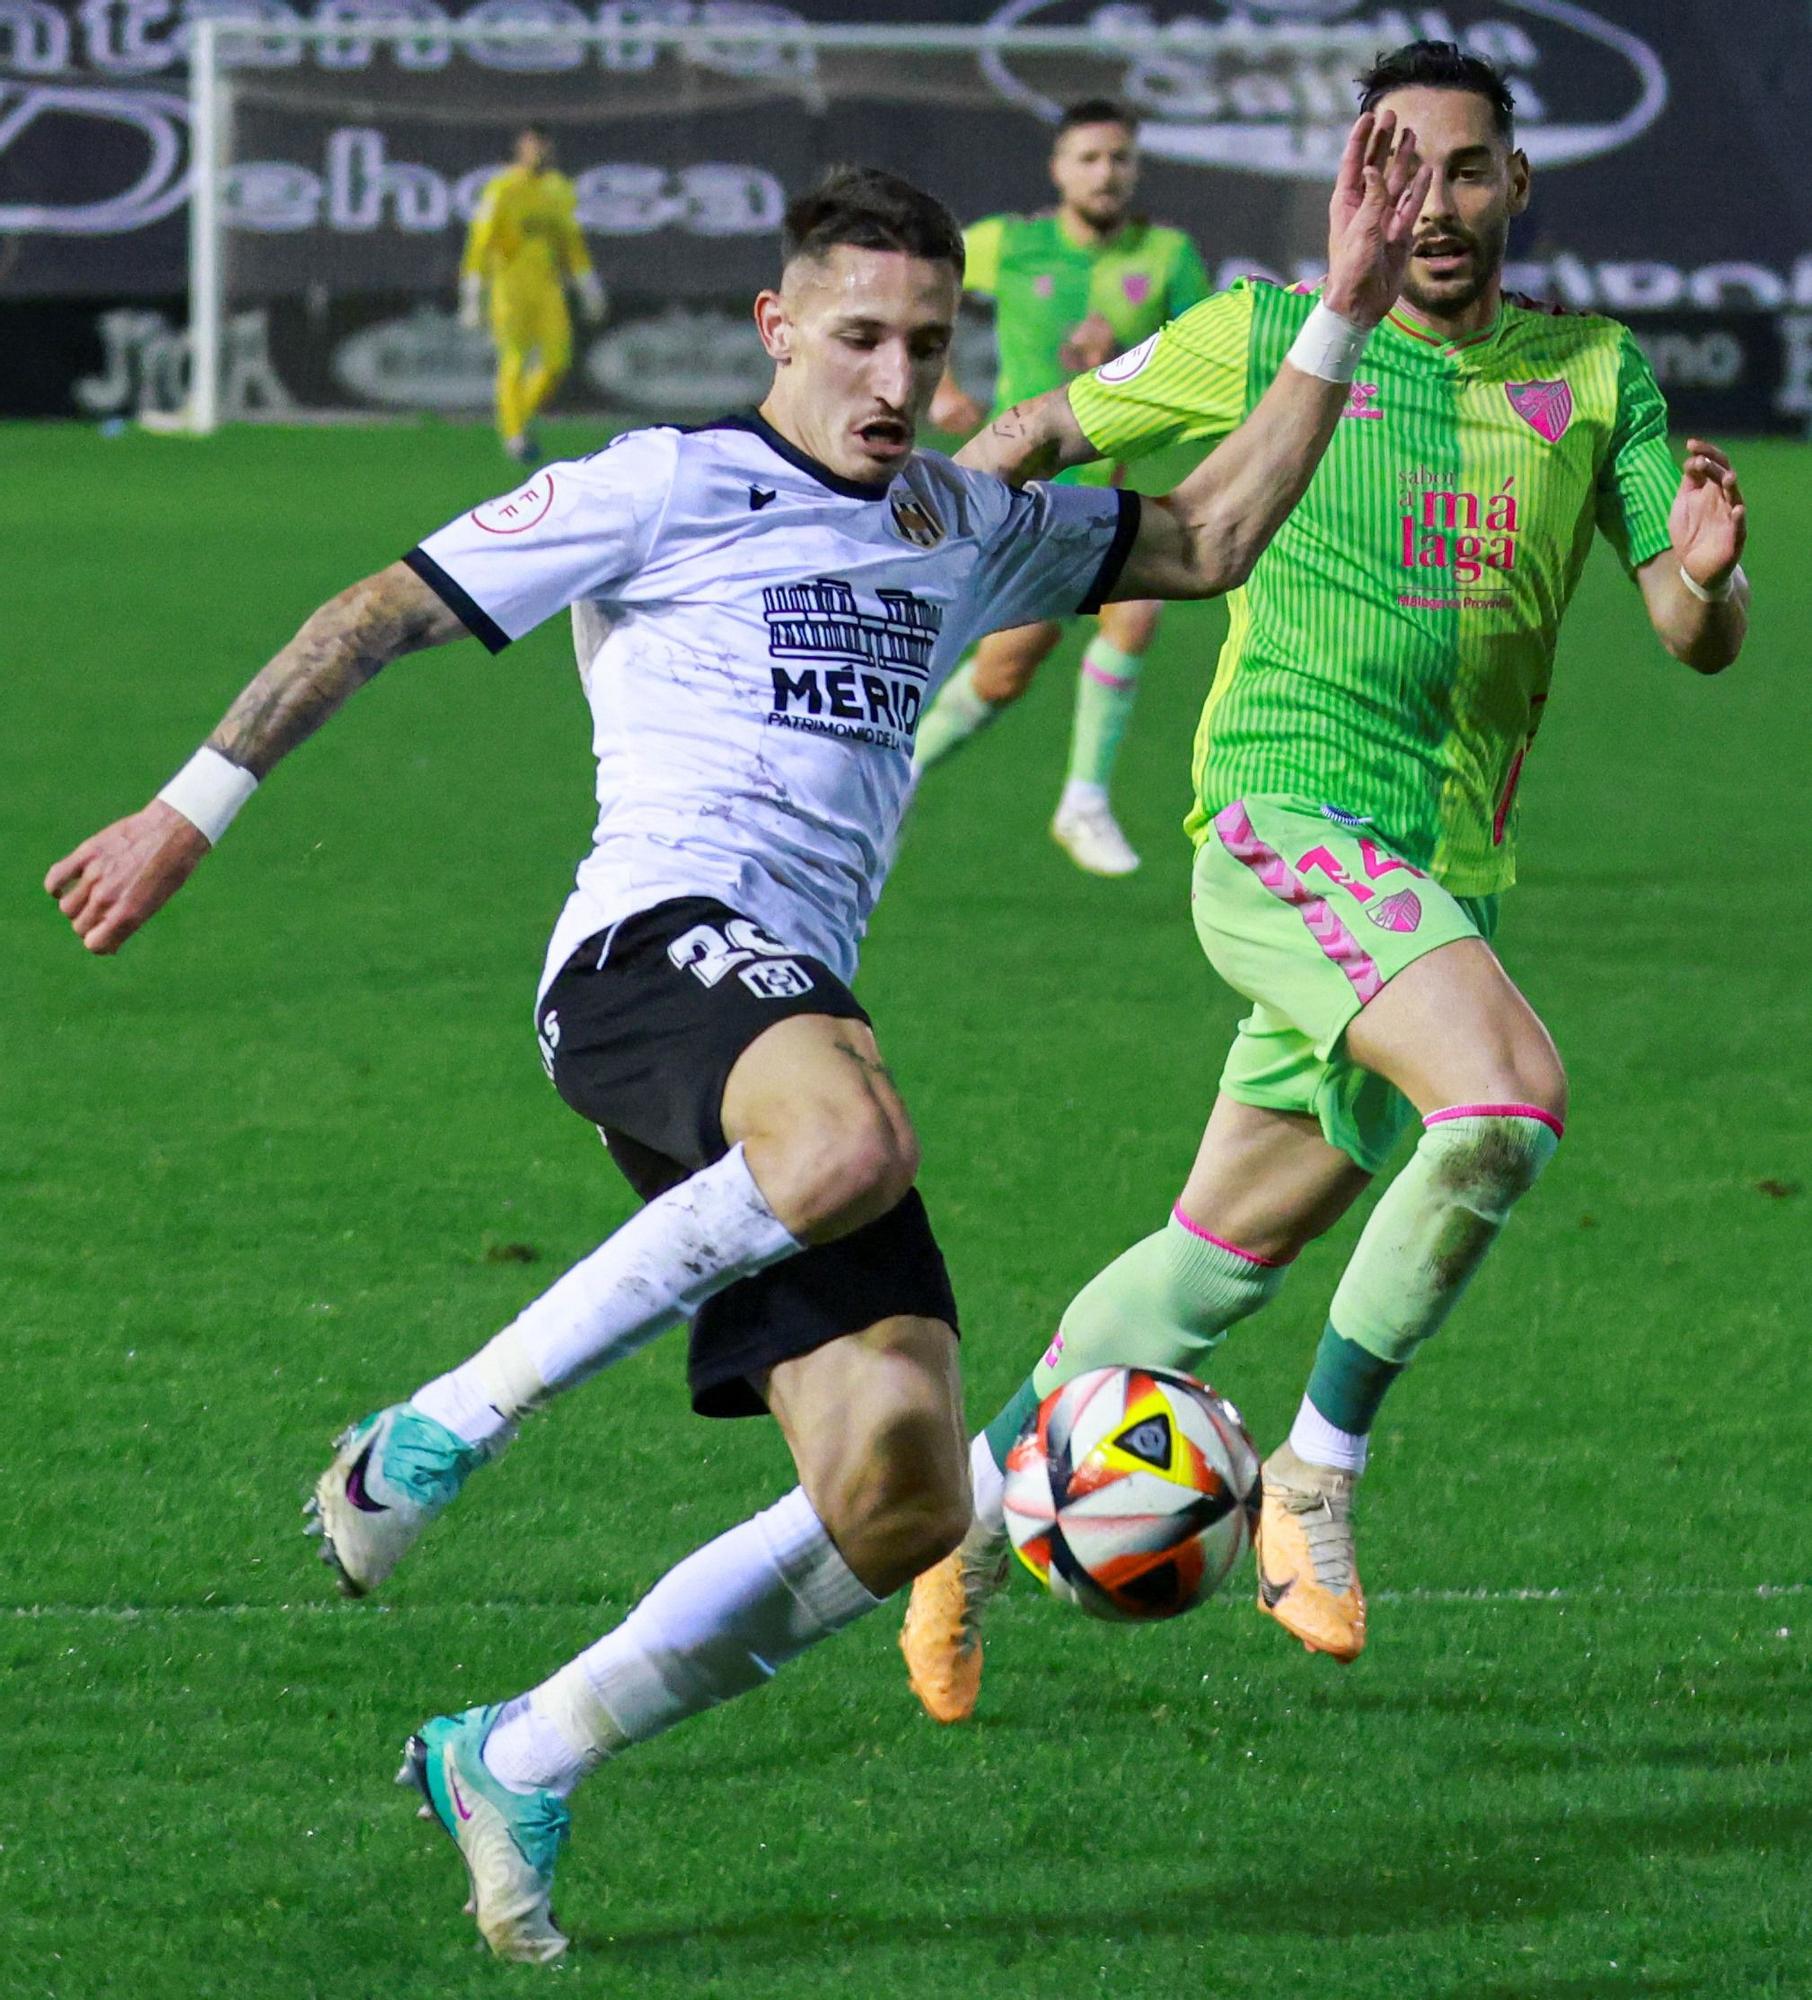 Una acción del Mérida - Málaga CF en el Romano José Fouto.